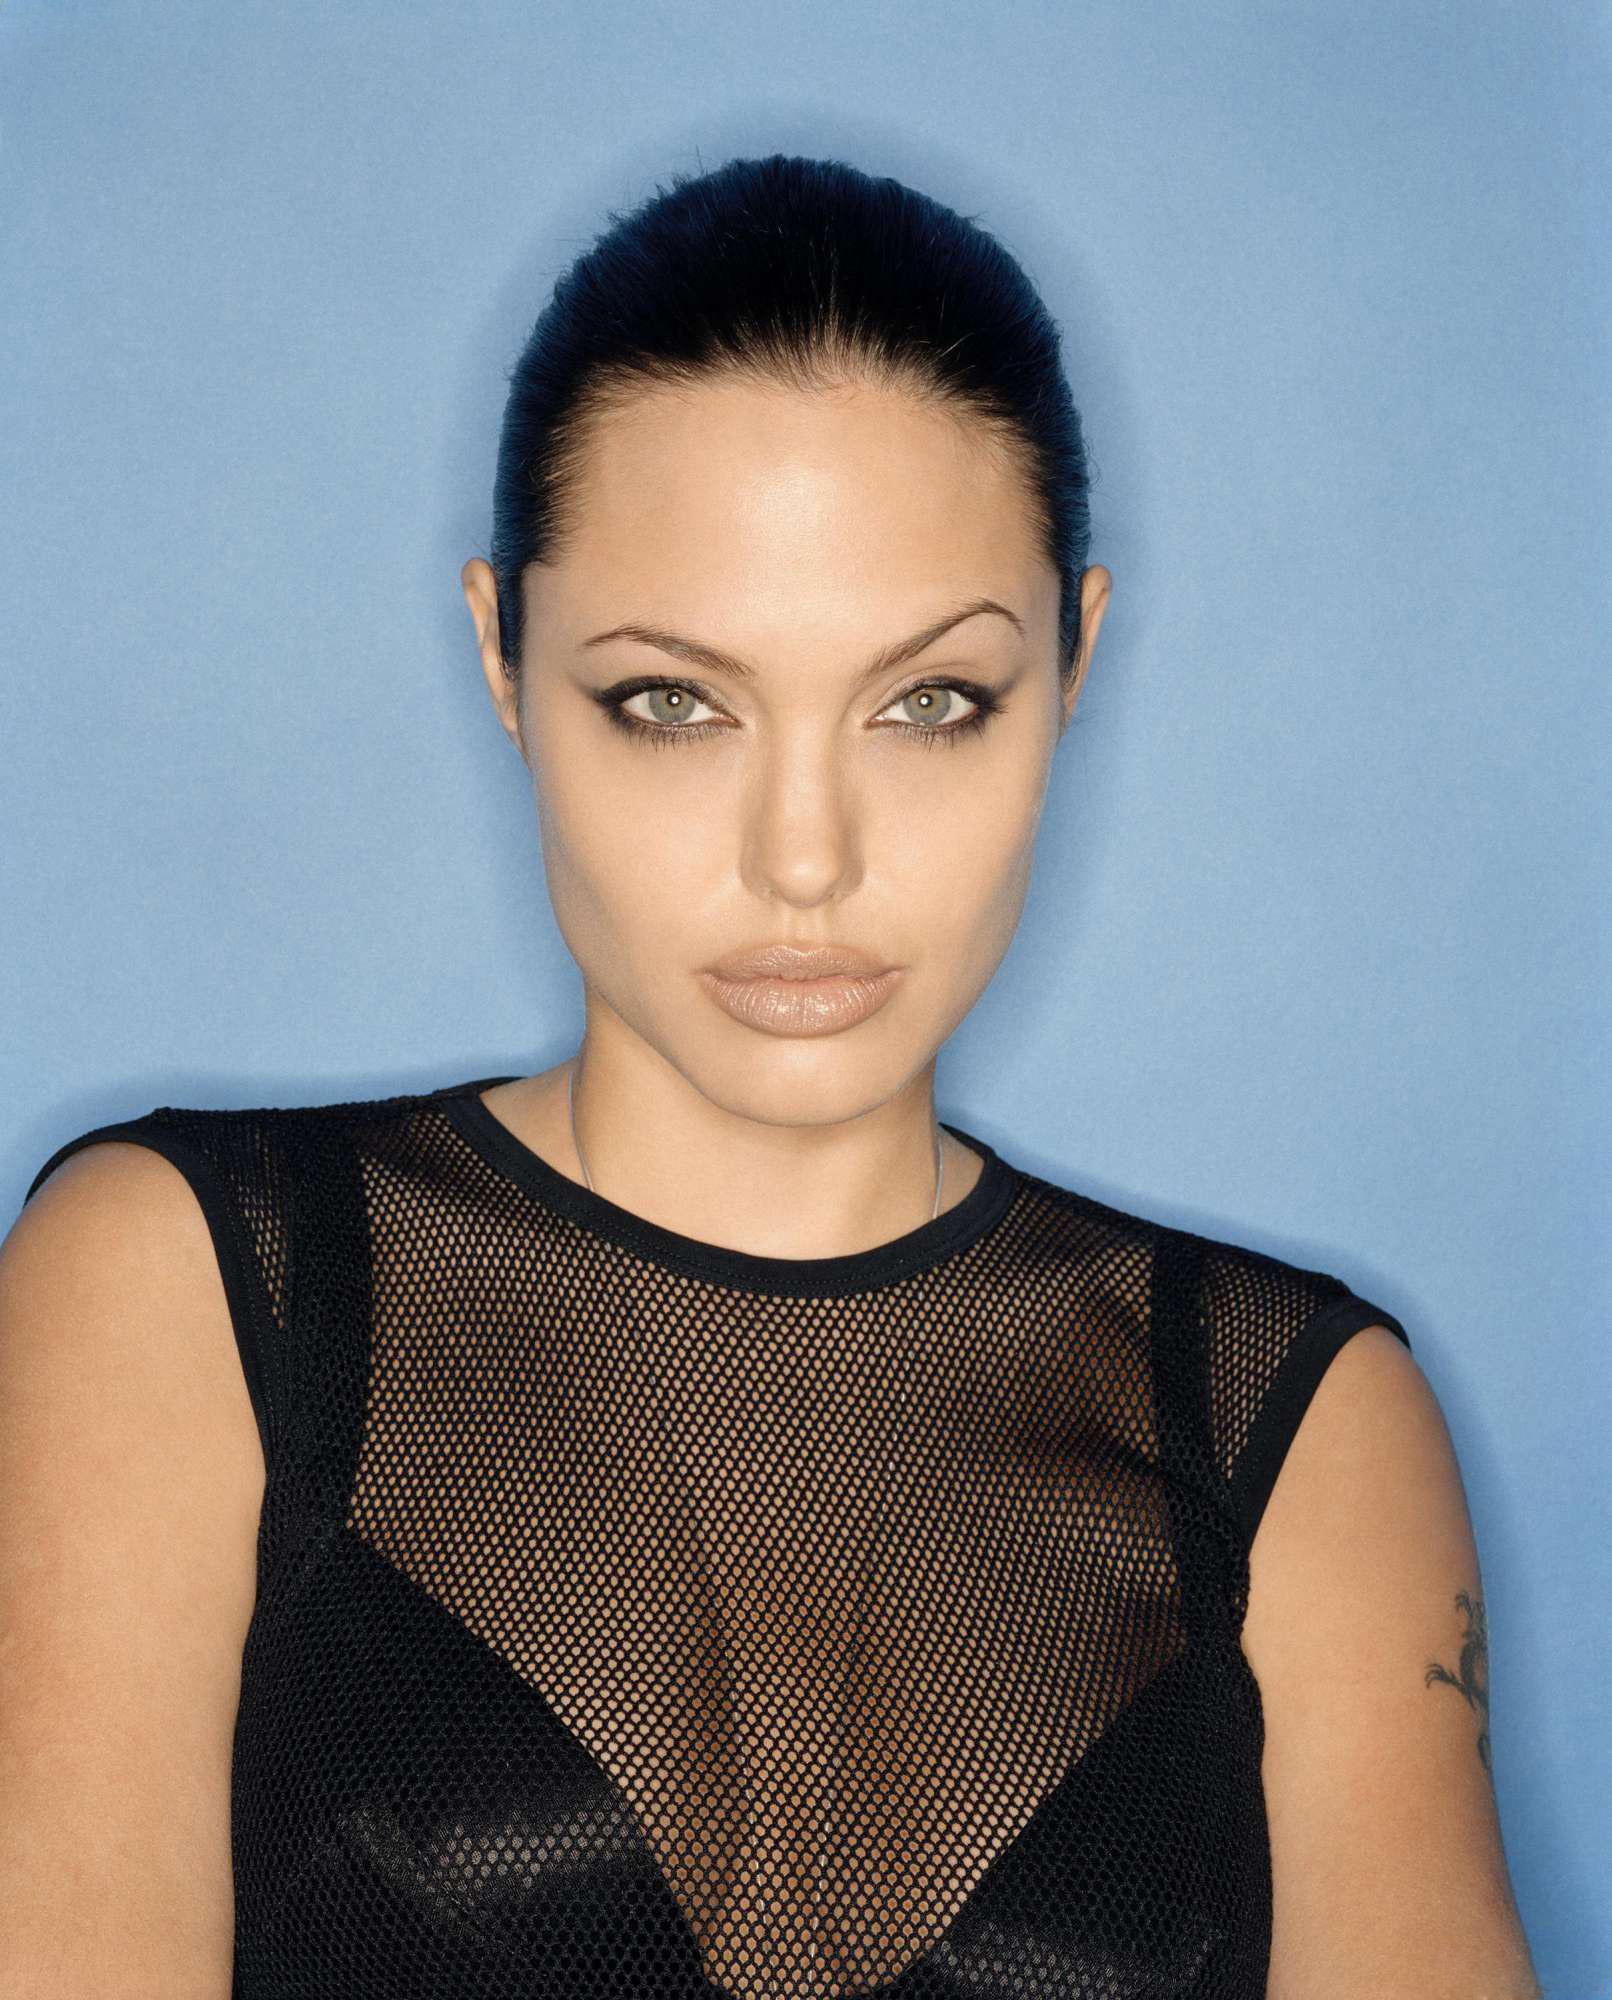 Angelina Jolie wallpaper №7560.